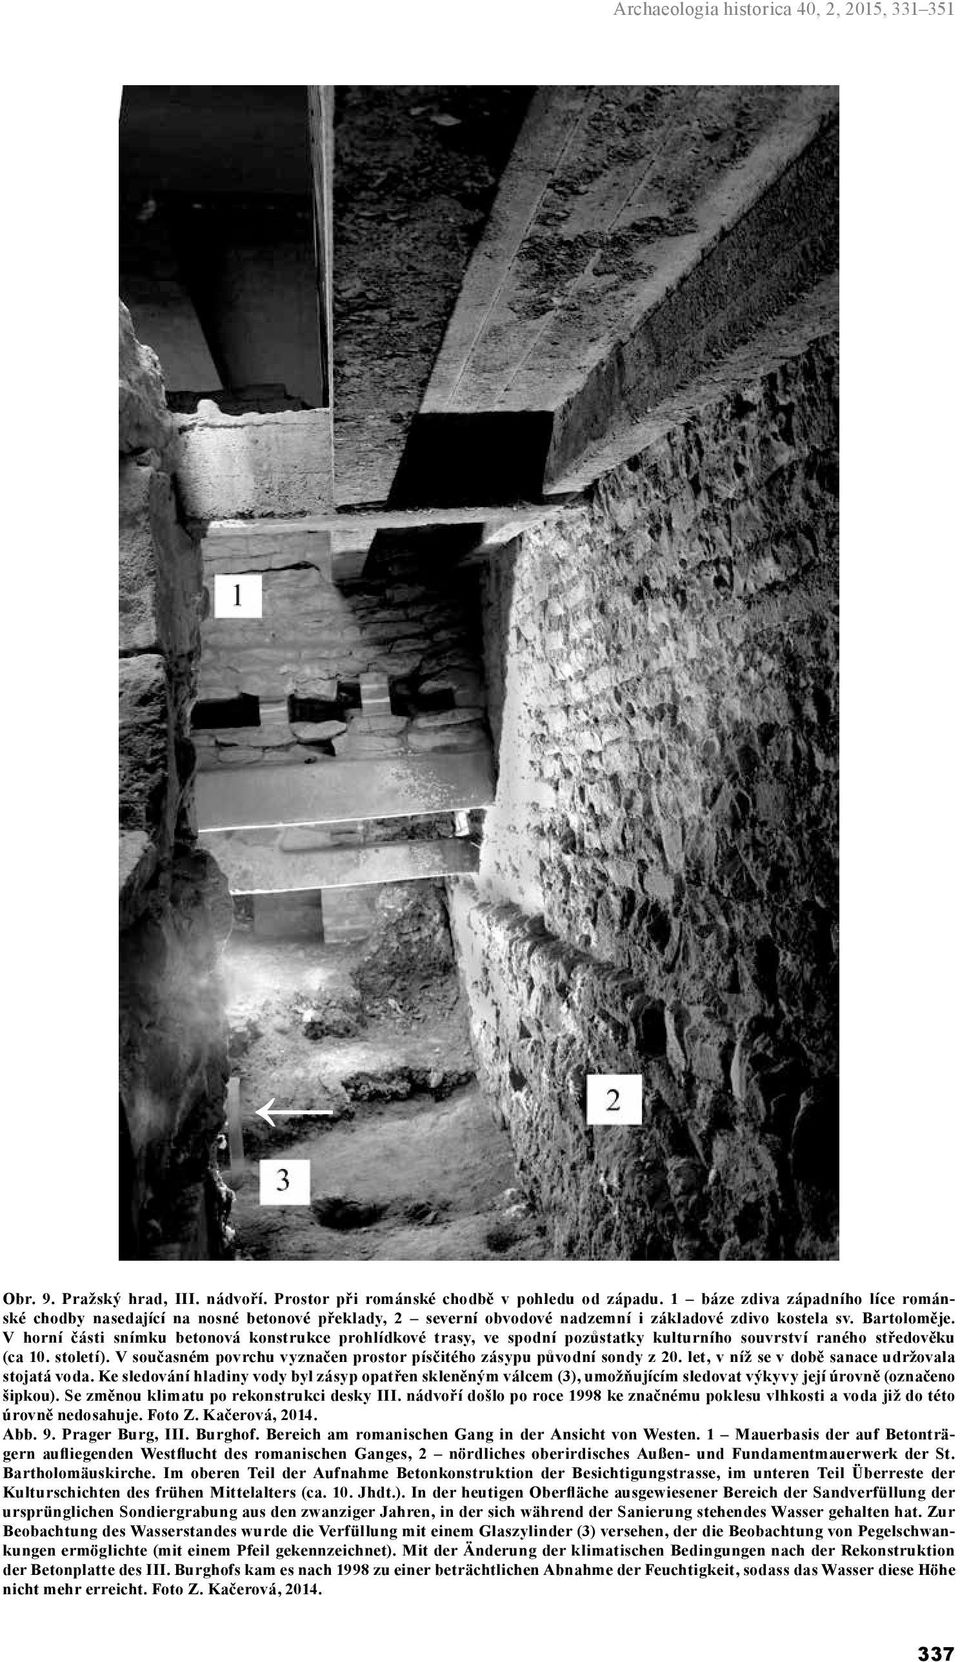 V horní části snímku betonová konstrukce prohlídkové trasy, ve spodní pozůstatky kulturního souvrství raného středověku (ca 10. století).